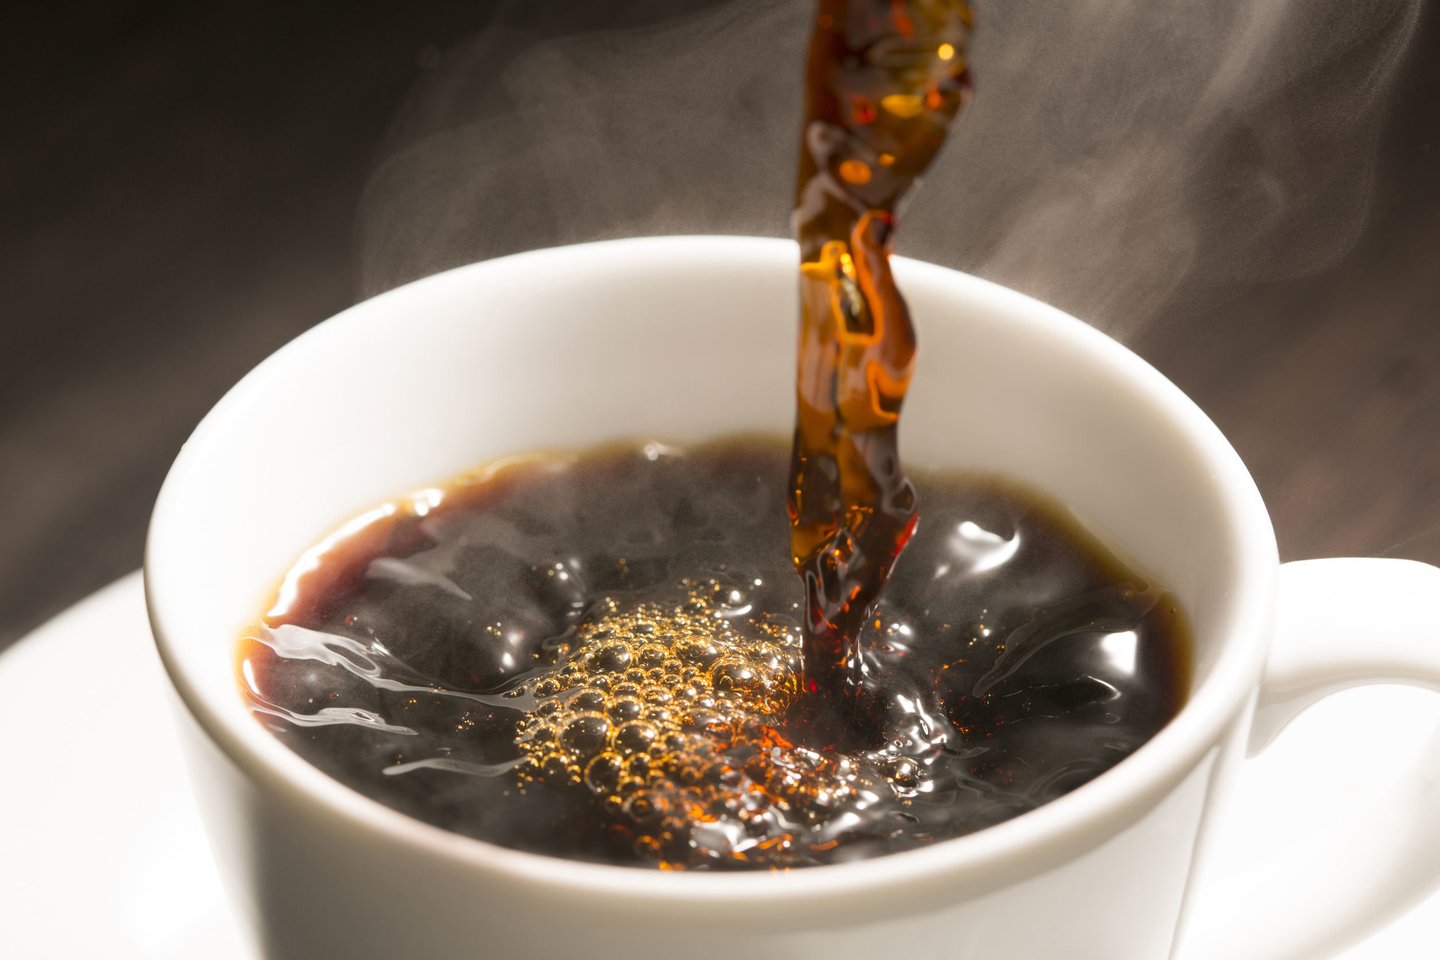  Kofeinas daugelio vadinamas populiariausiu legaliu narkotiku pasaulyje, nes yra centrinės nervų sistemos stimuliatorius, sukeliantis priklausomybę.<br> 123rf nuotr.